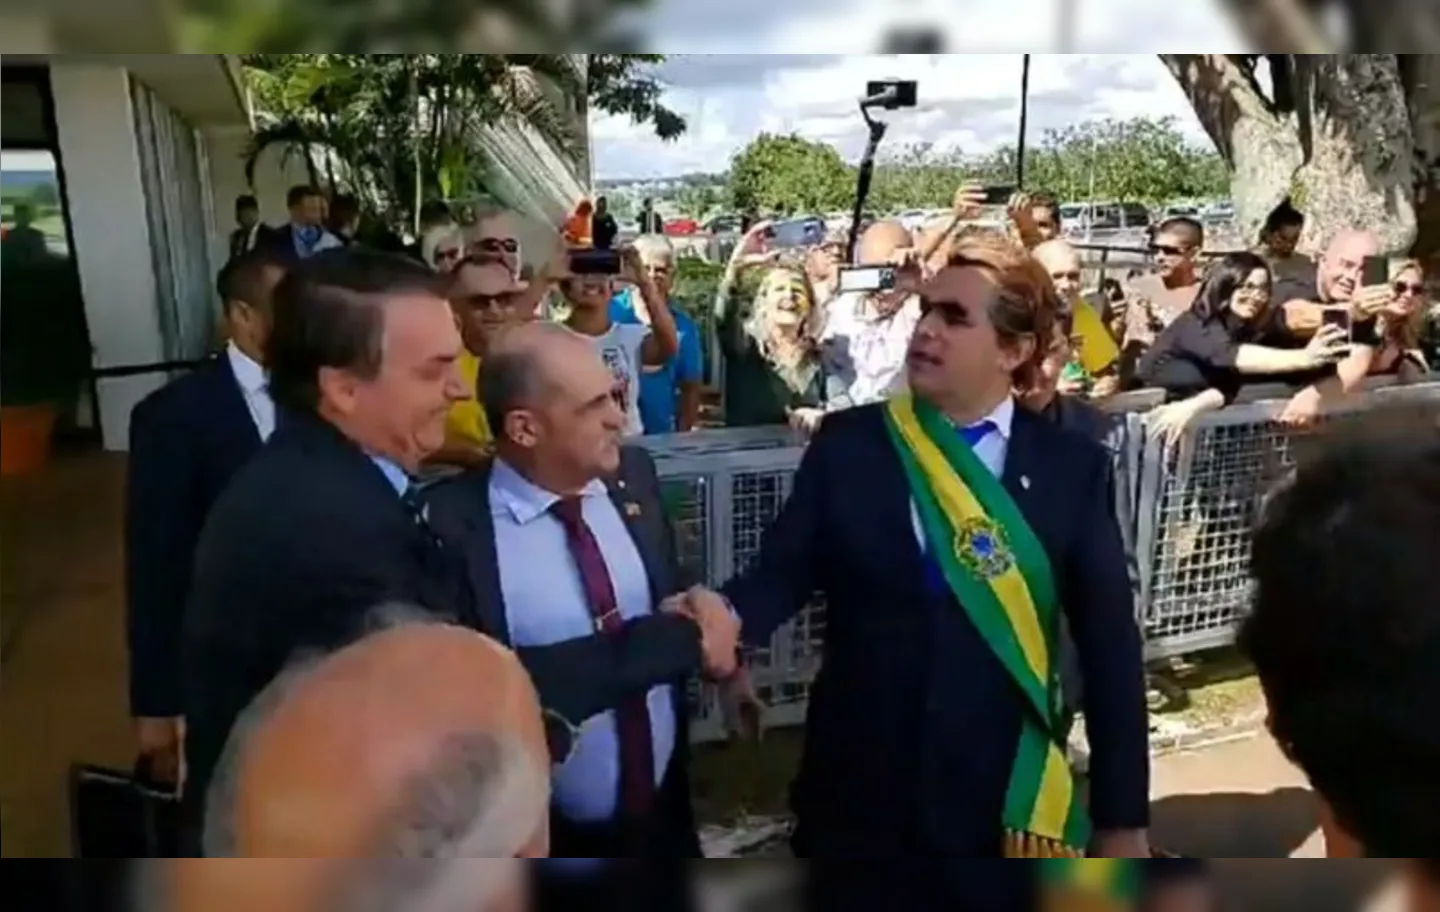 Vestido de presidente, Marvio Lúcio, o Carioca, distribuiu banana em frente ao Palácio da Alvorada | Foto: Reprodução | Twitter